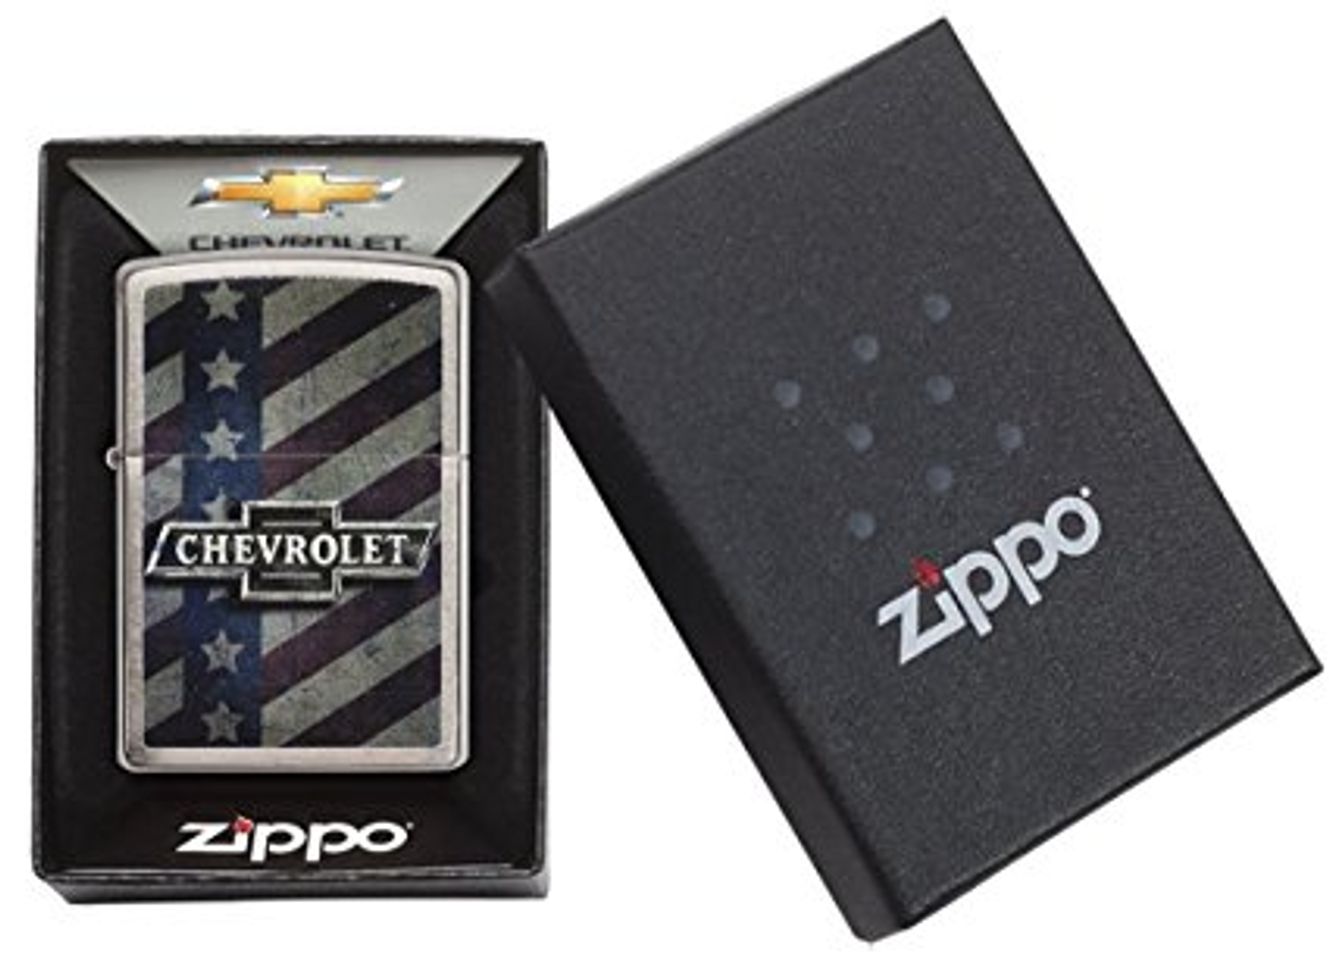 Zippo 29148 được nhập chính hãng từ Mỹ đựng trong chiếc hộp nhỏ nhắn